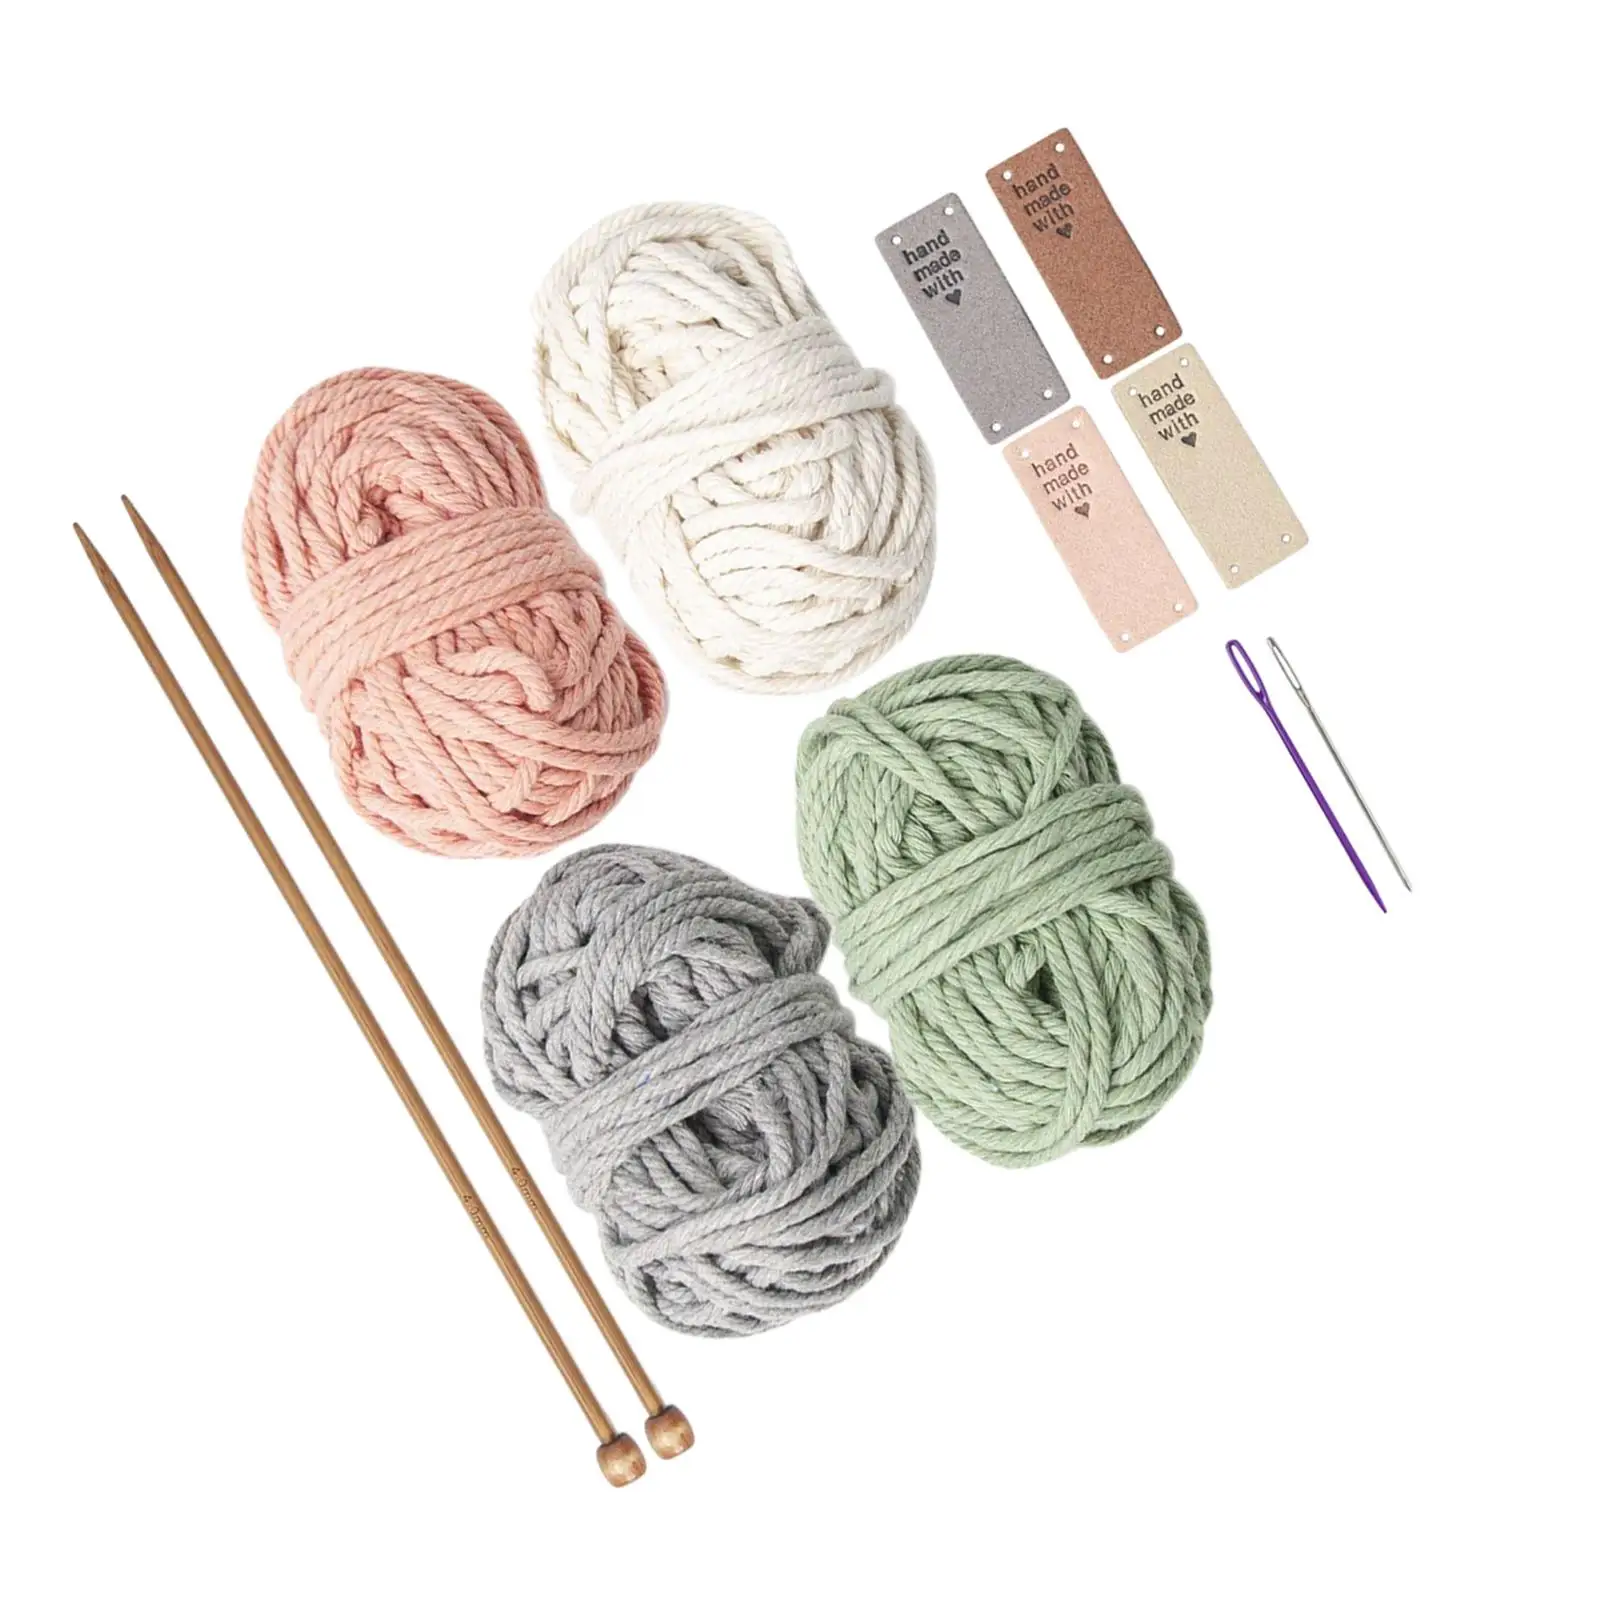 Crochet Kit for Beginners Colorful Crochet Coaster for Starter Children